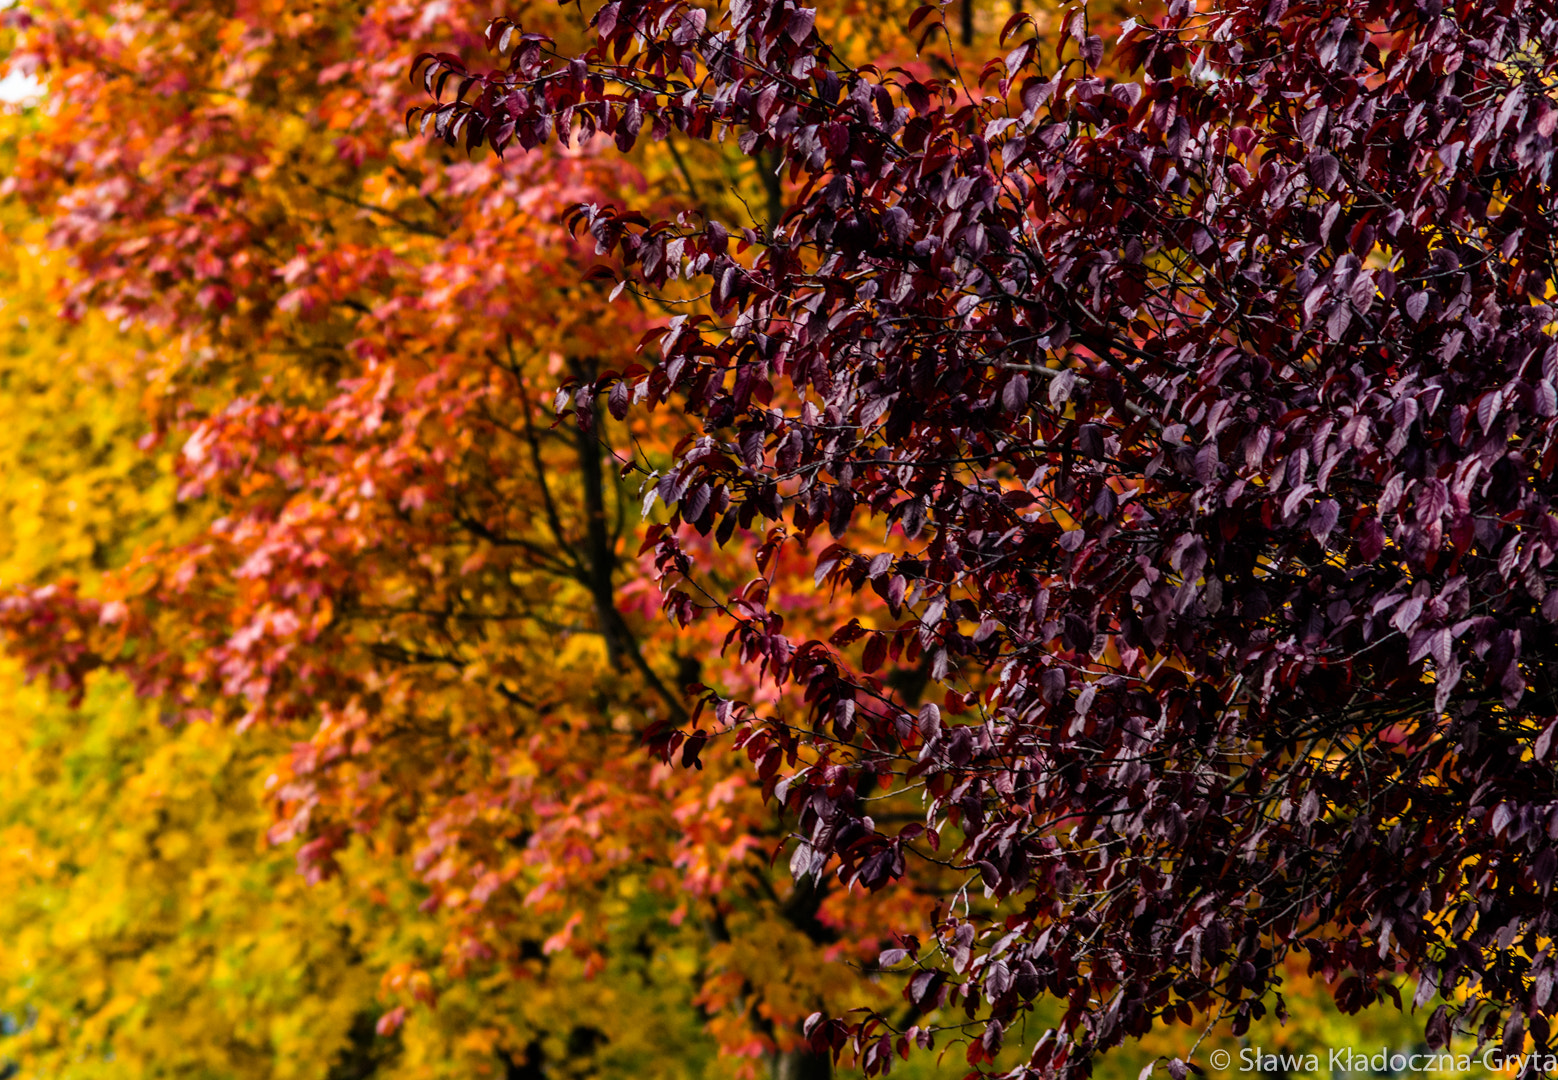 Nikon D7100 + AF Zoom-Nikkor 70-210mm f/4 sample photo. Autumn photography